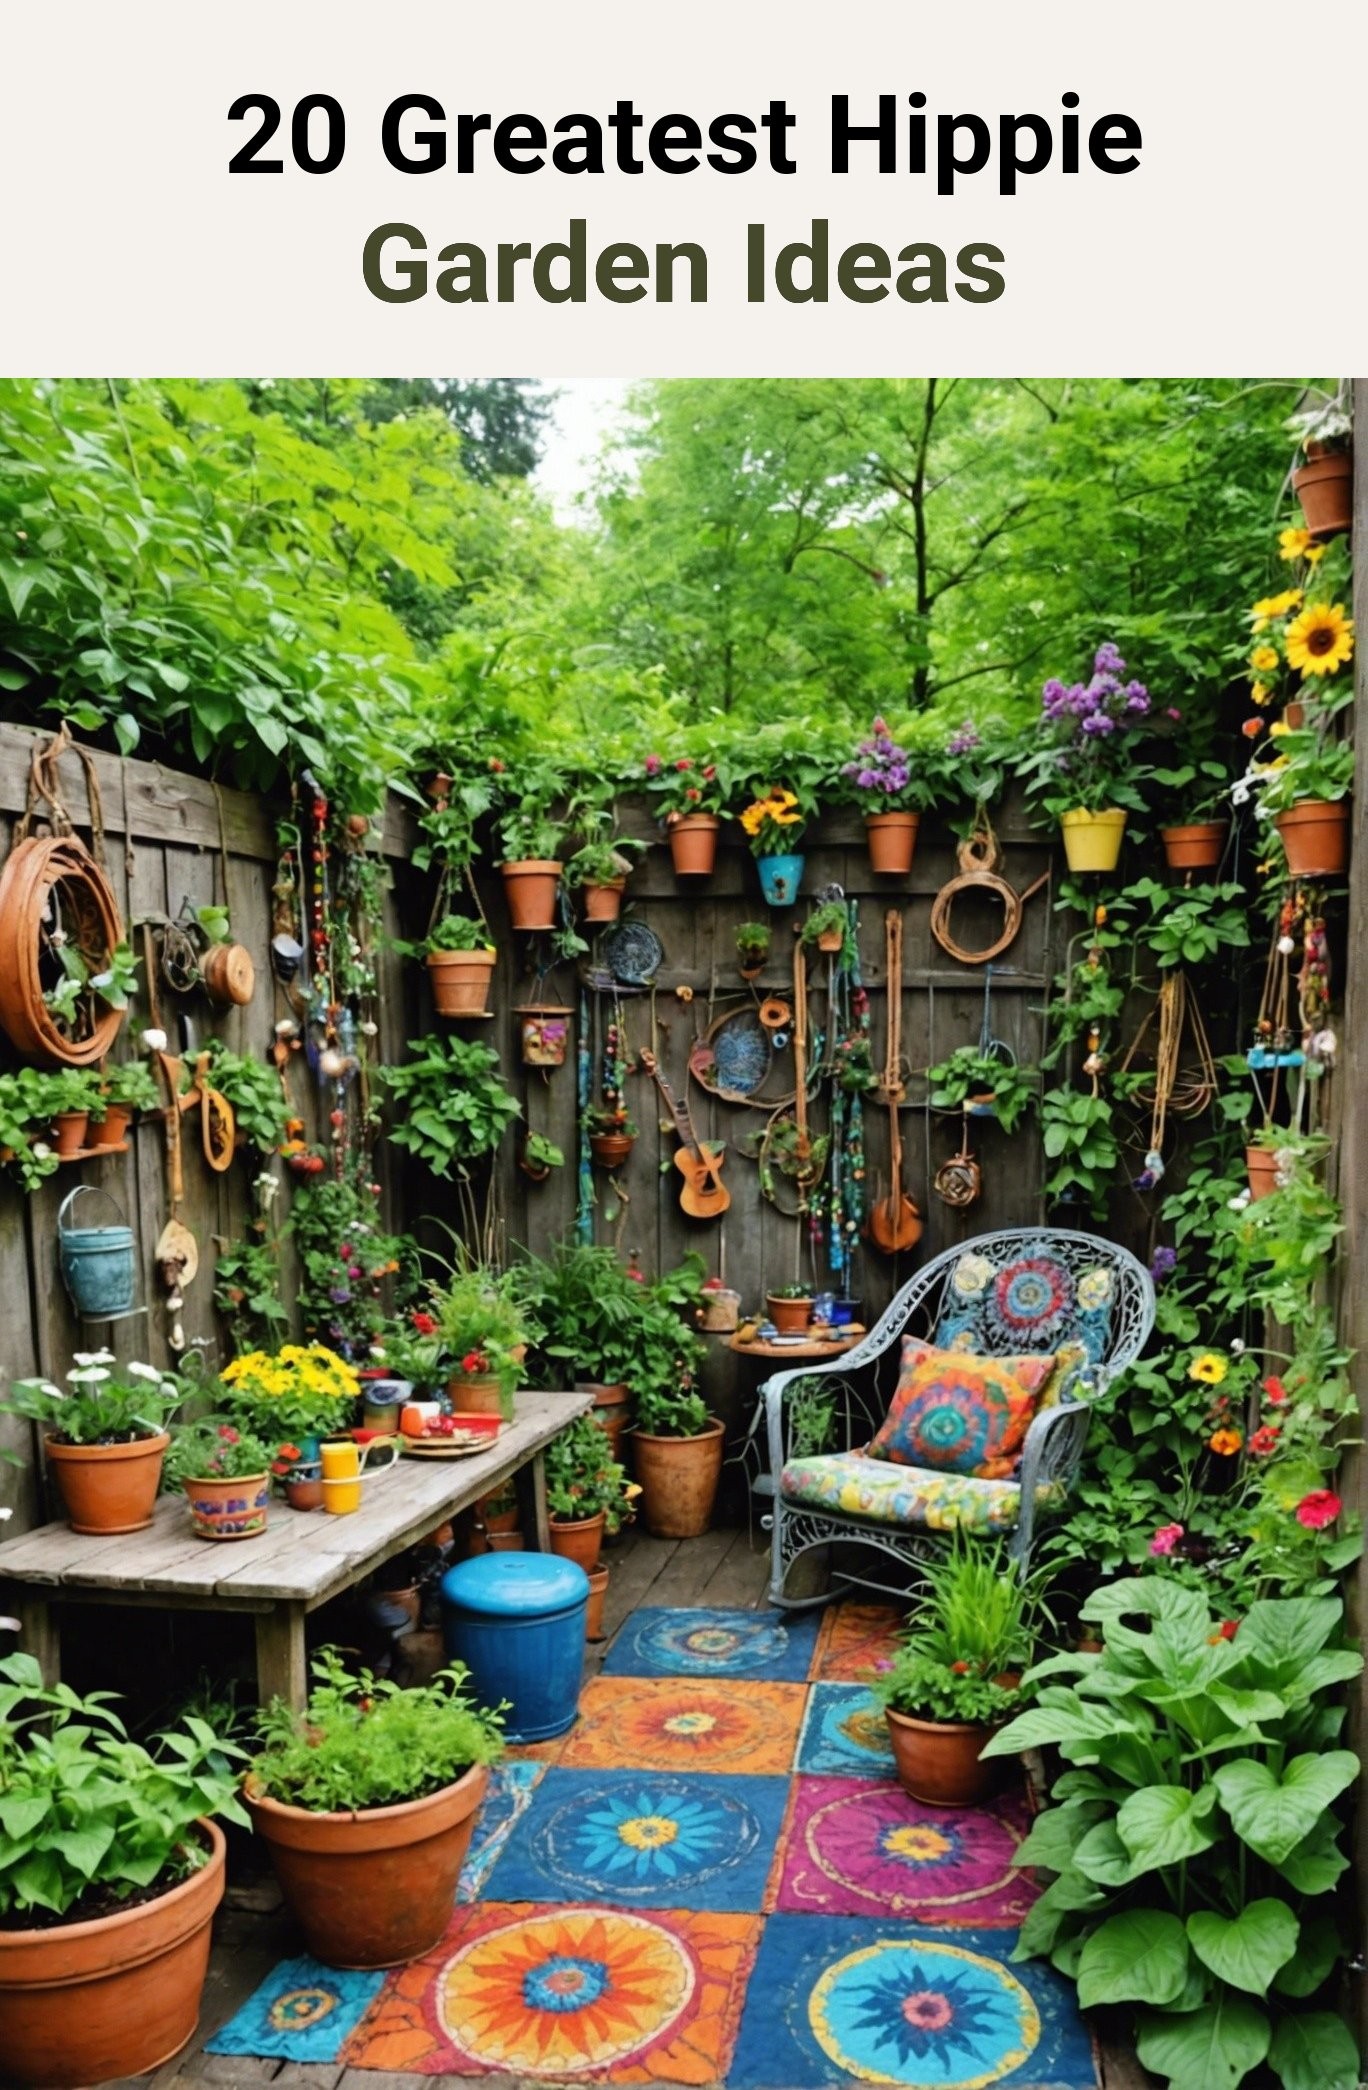 20 Greatest Hippie Garden Ideas